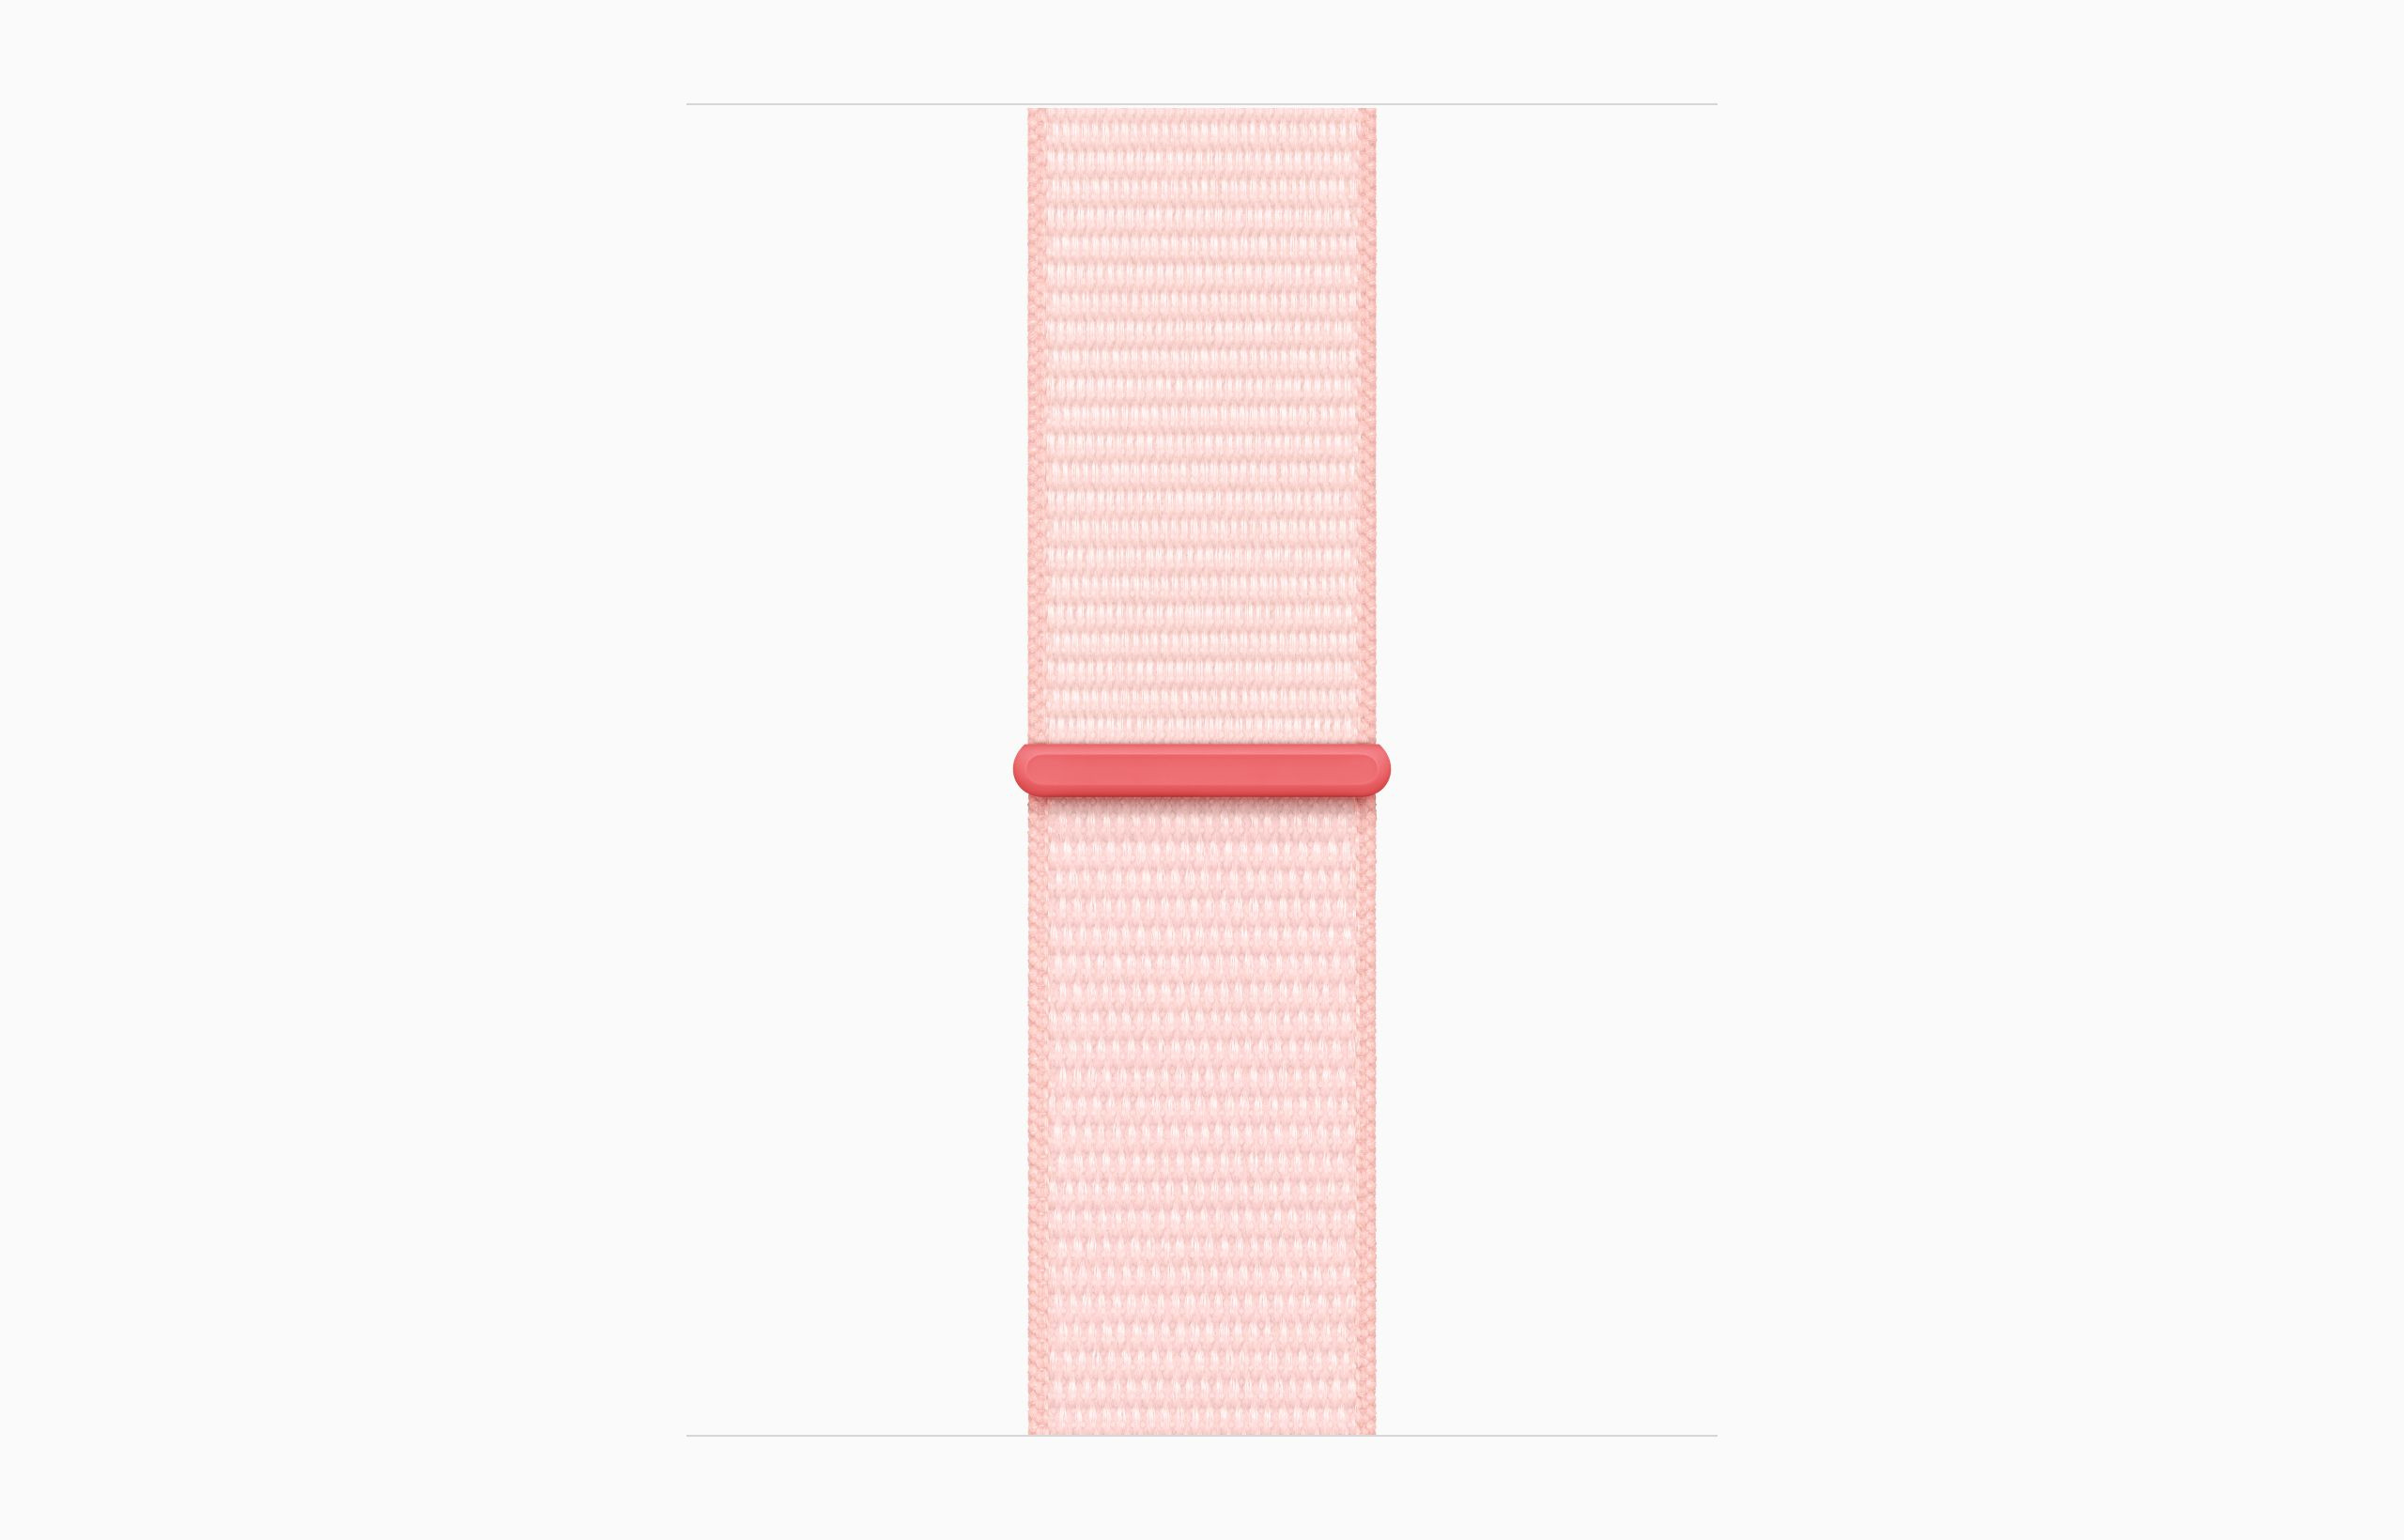 Obrázek Apple Watch S9 Cell/45mm/Pink/Sport Band/Light Pink